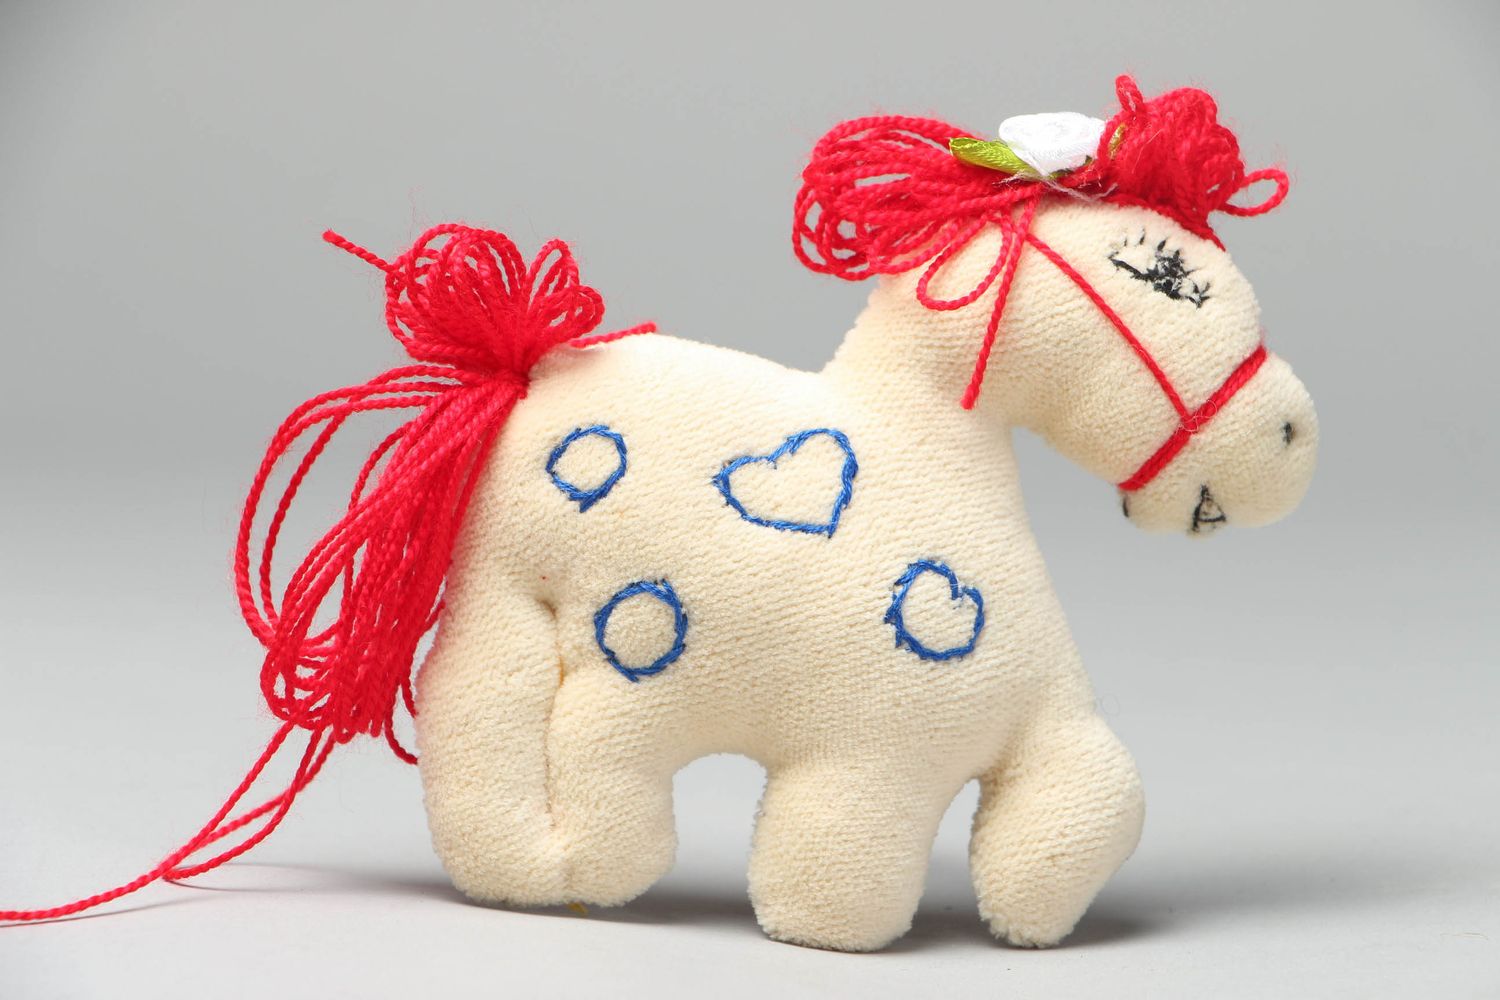 Textil Spielzeug von Handarbeit Pferd foto 1